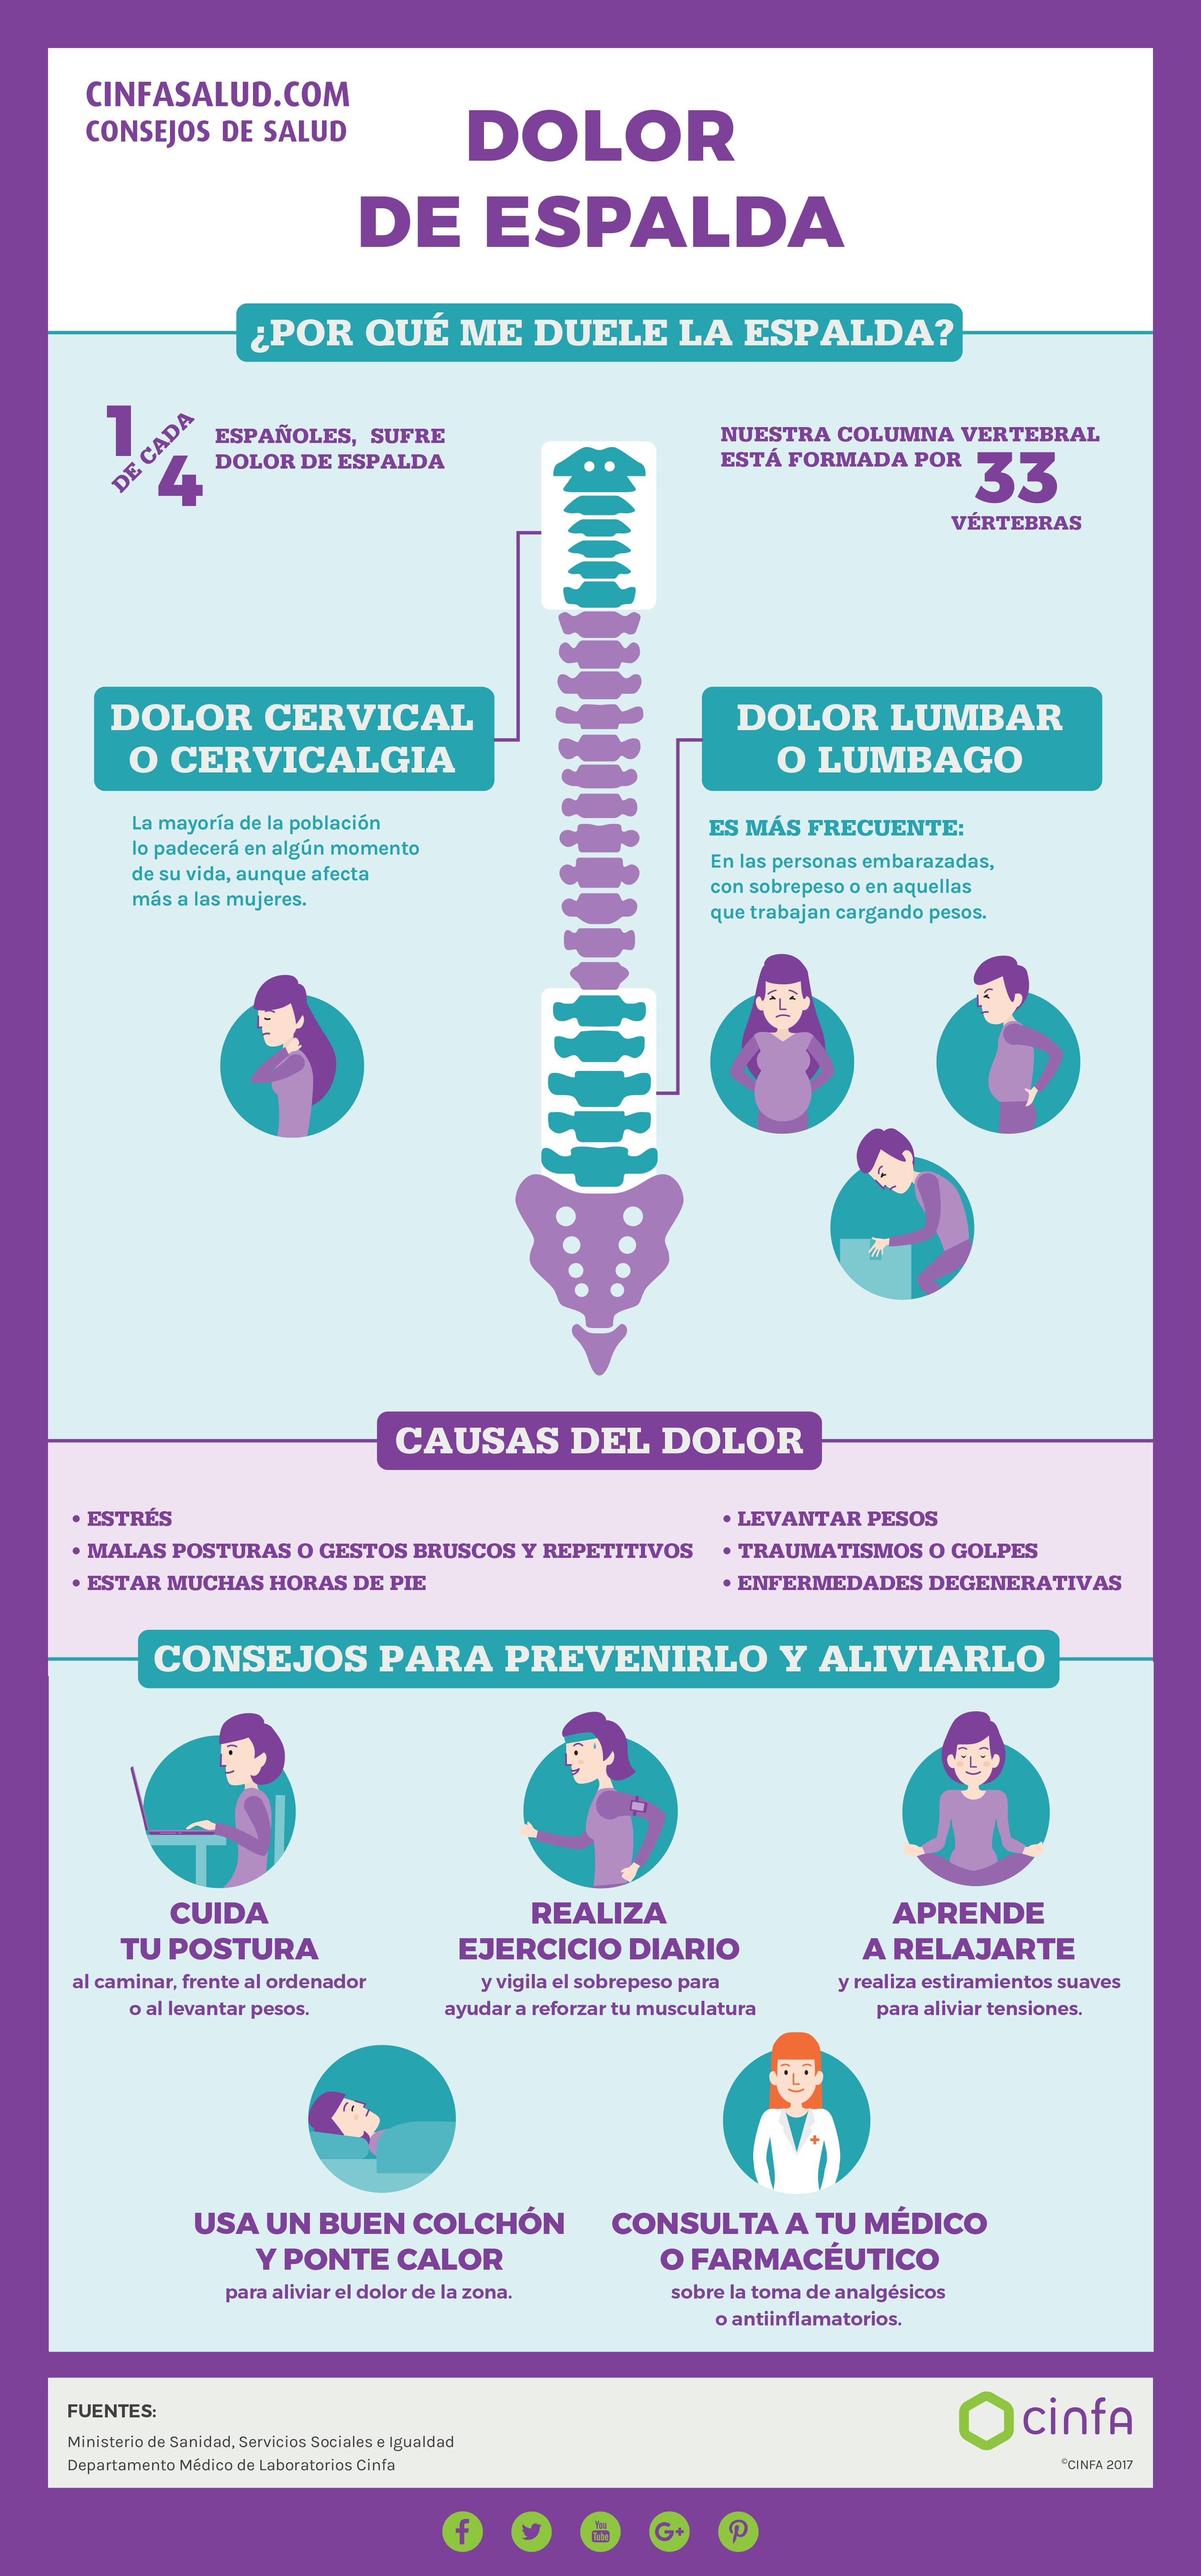 Dolor cervical: causas y tratamiento